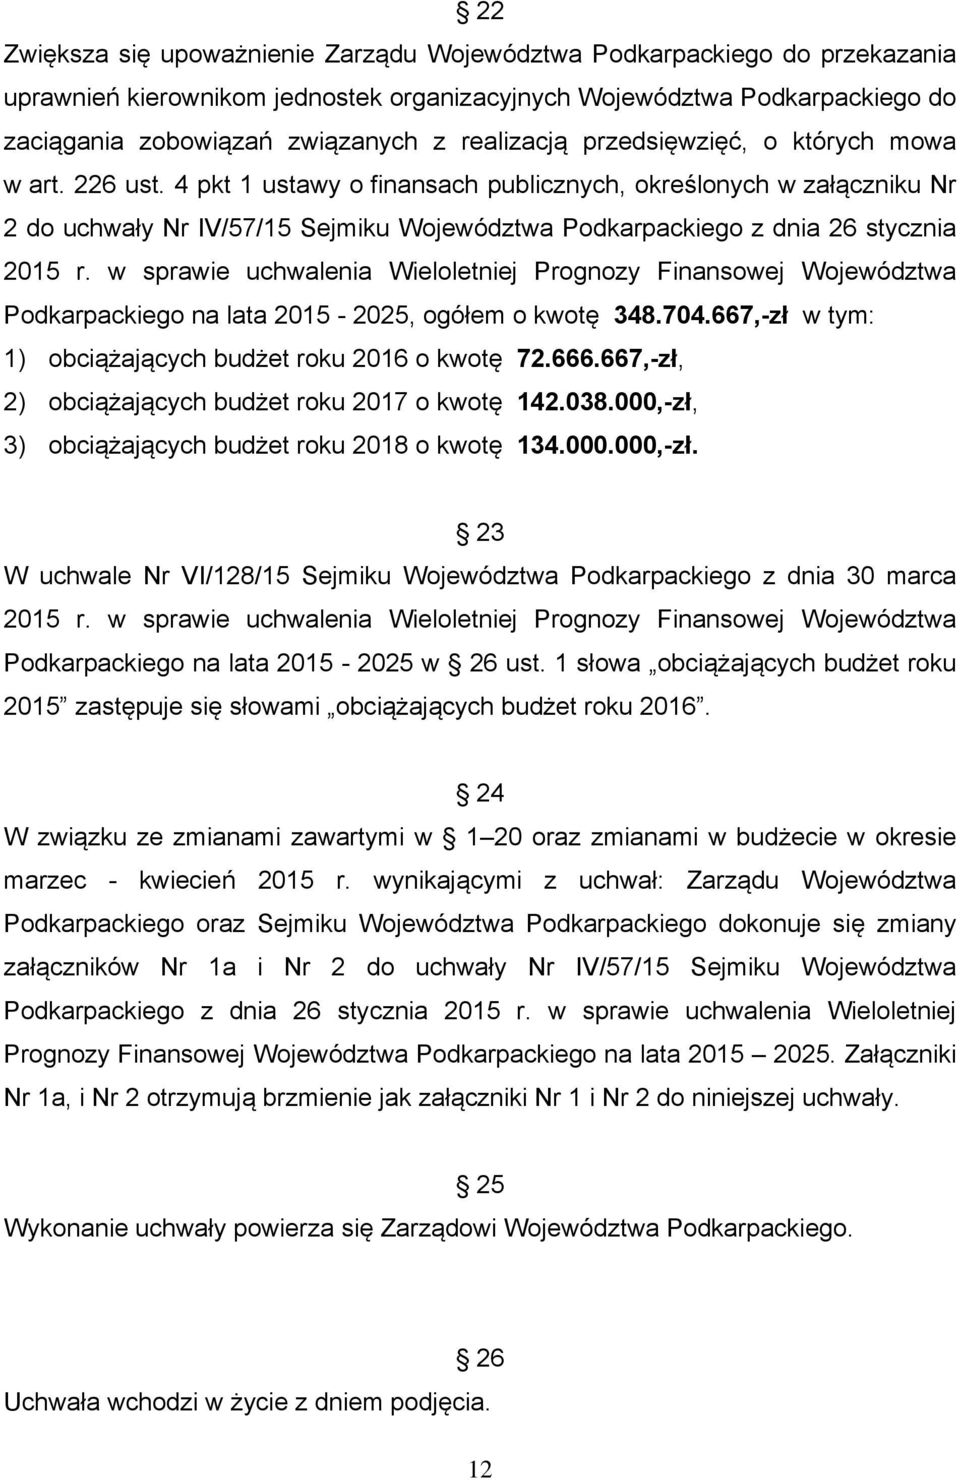 4 pkt 1 ustawy o finansach publicznych, określonych w załączniku Nr 2 do uchwały Nr IV/57/15 Sejmiku Województwa Podkarpackiego z dnia 26 stycznia 2015 r.